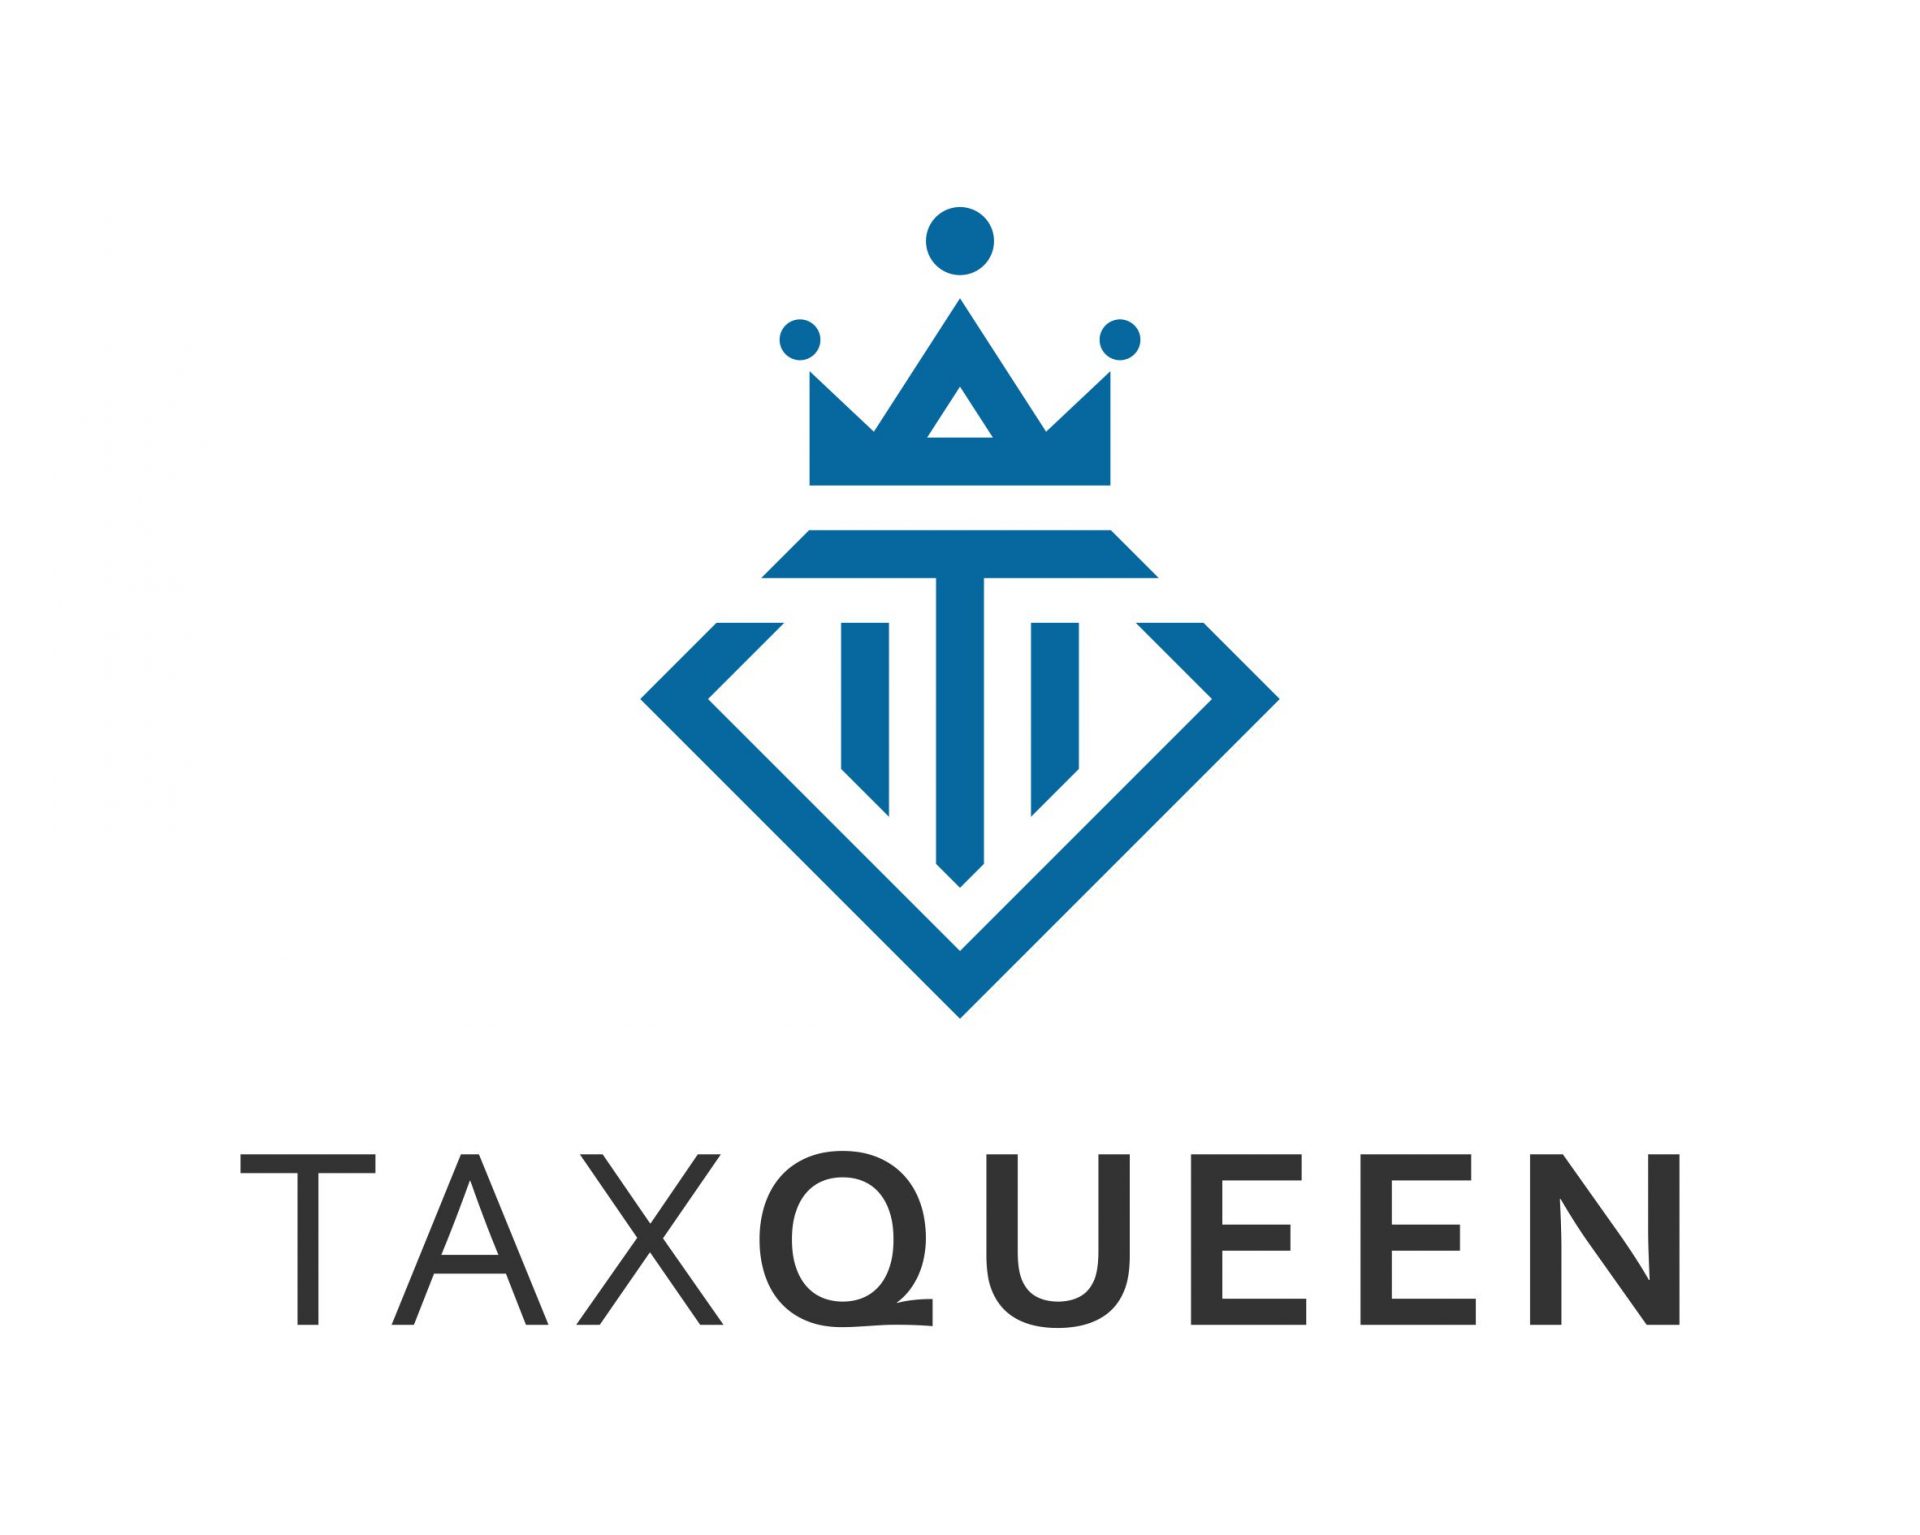 Tax queen logo